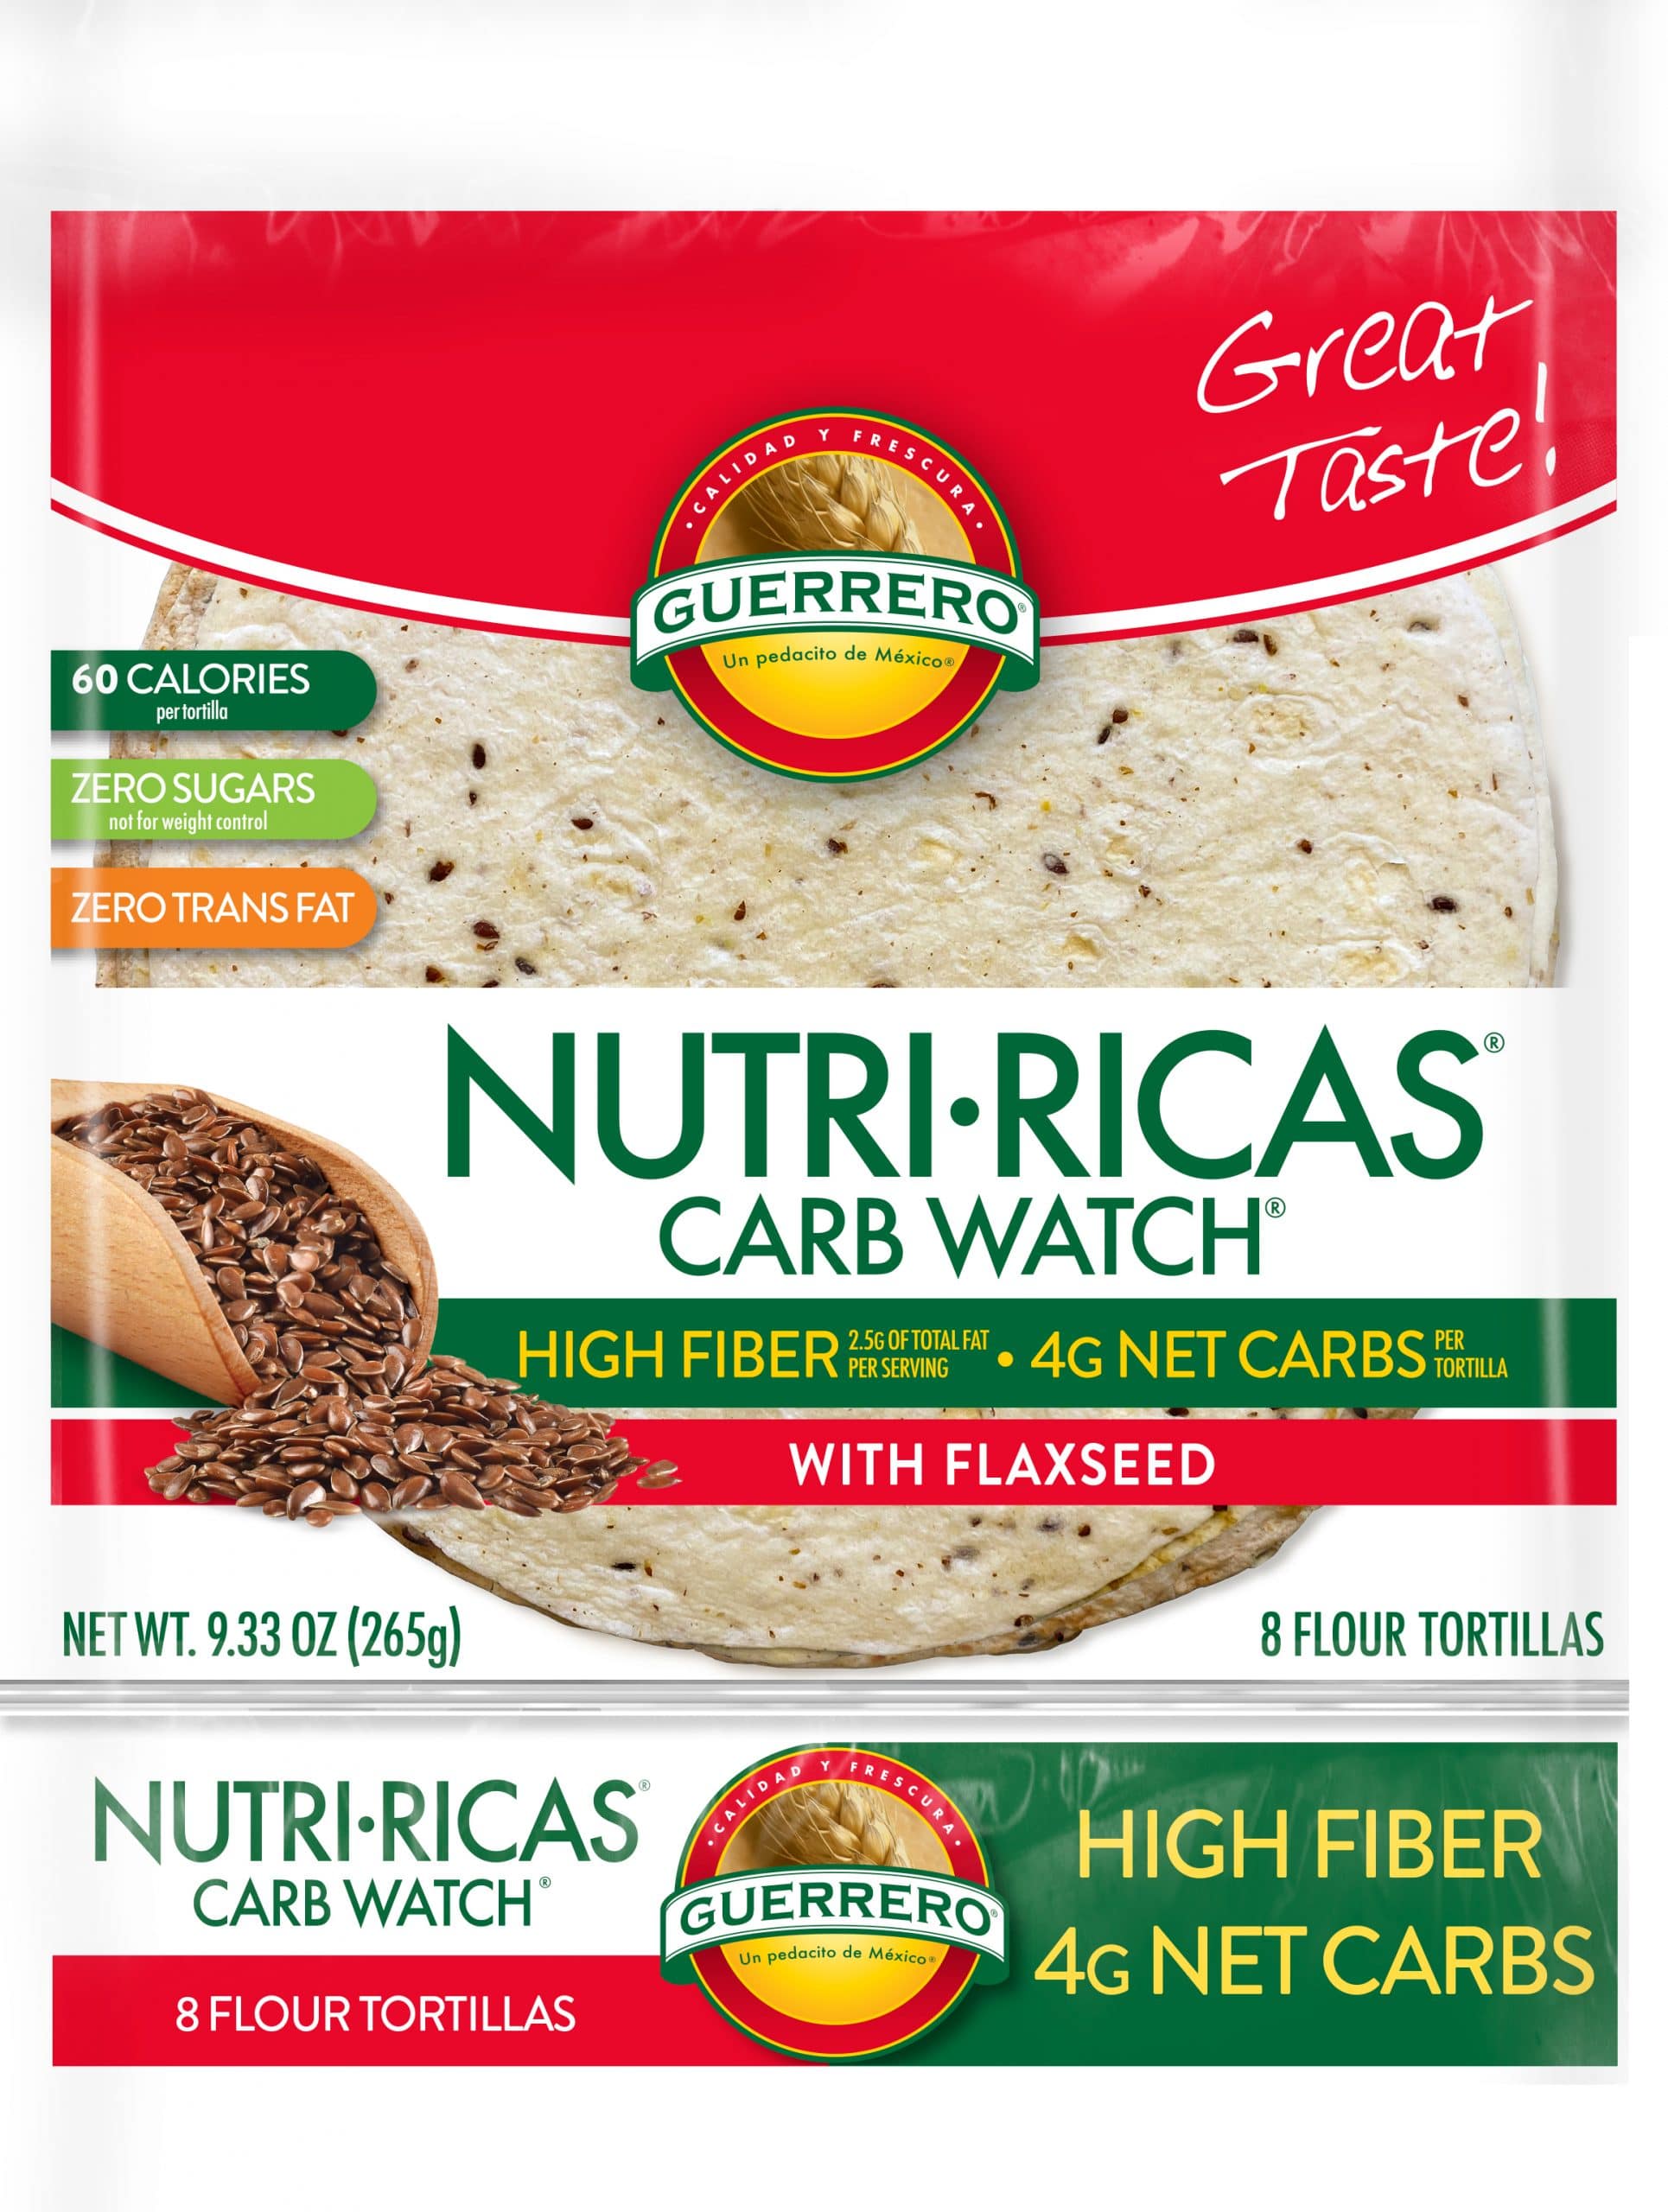 Tortillas de Harina Nutri-Ricas Carb Watch